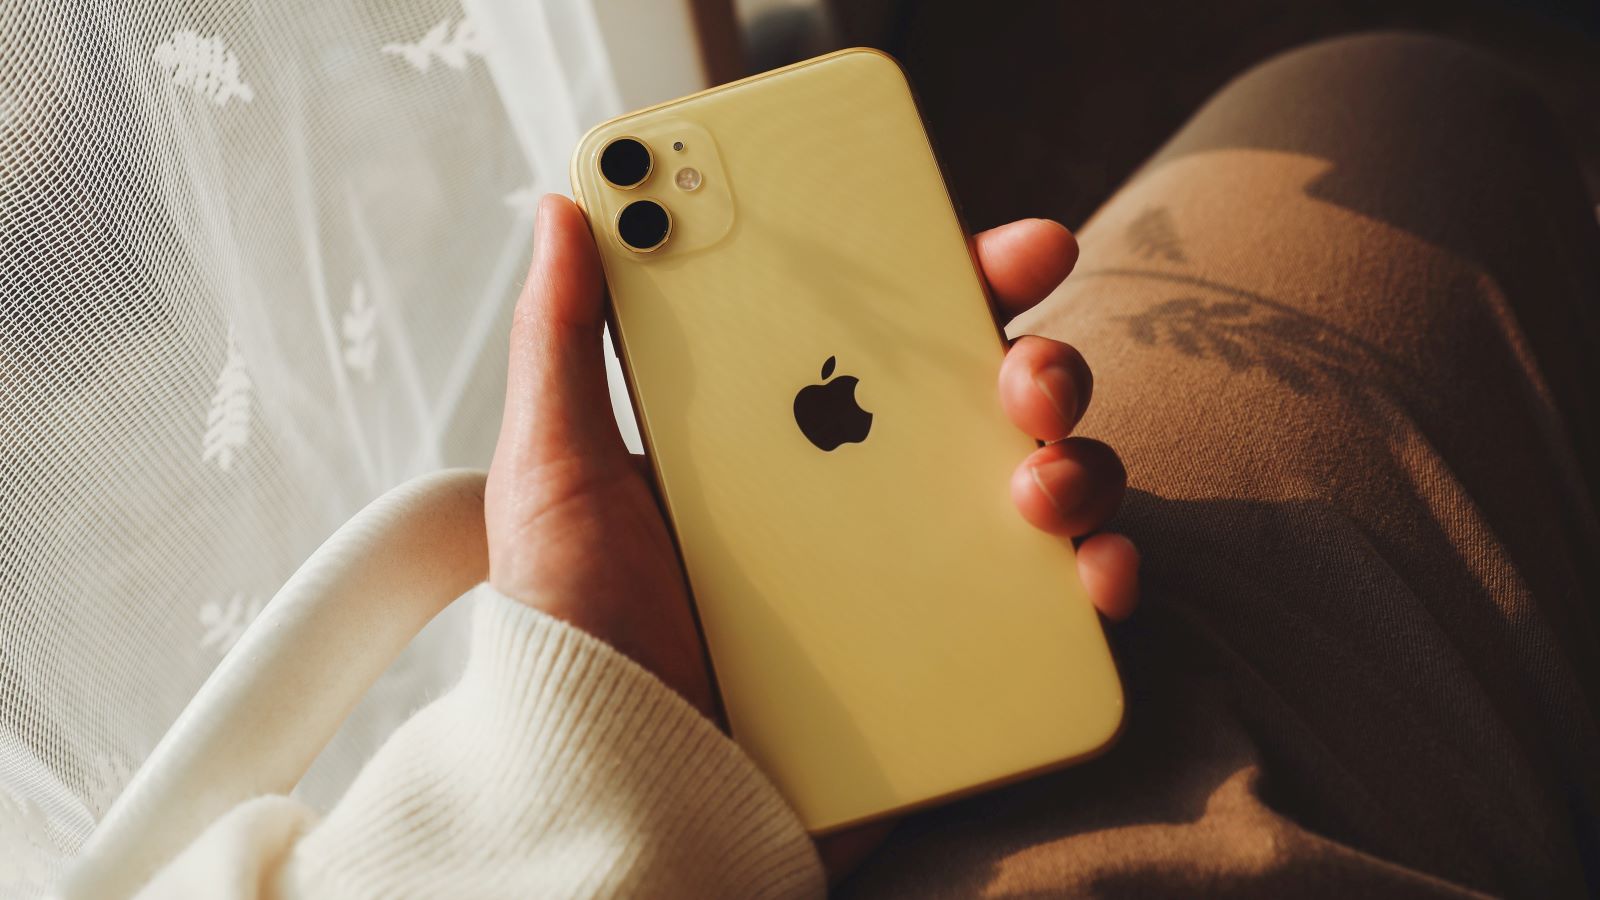 iPhone szerviz, sárga iPhone